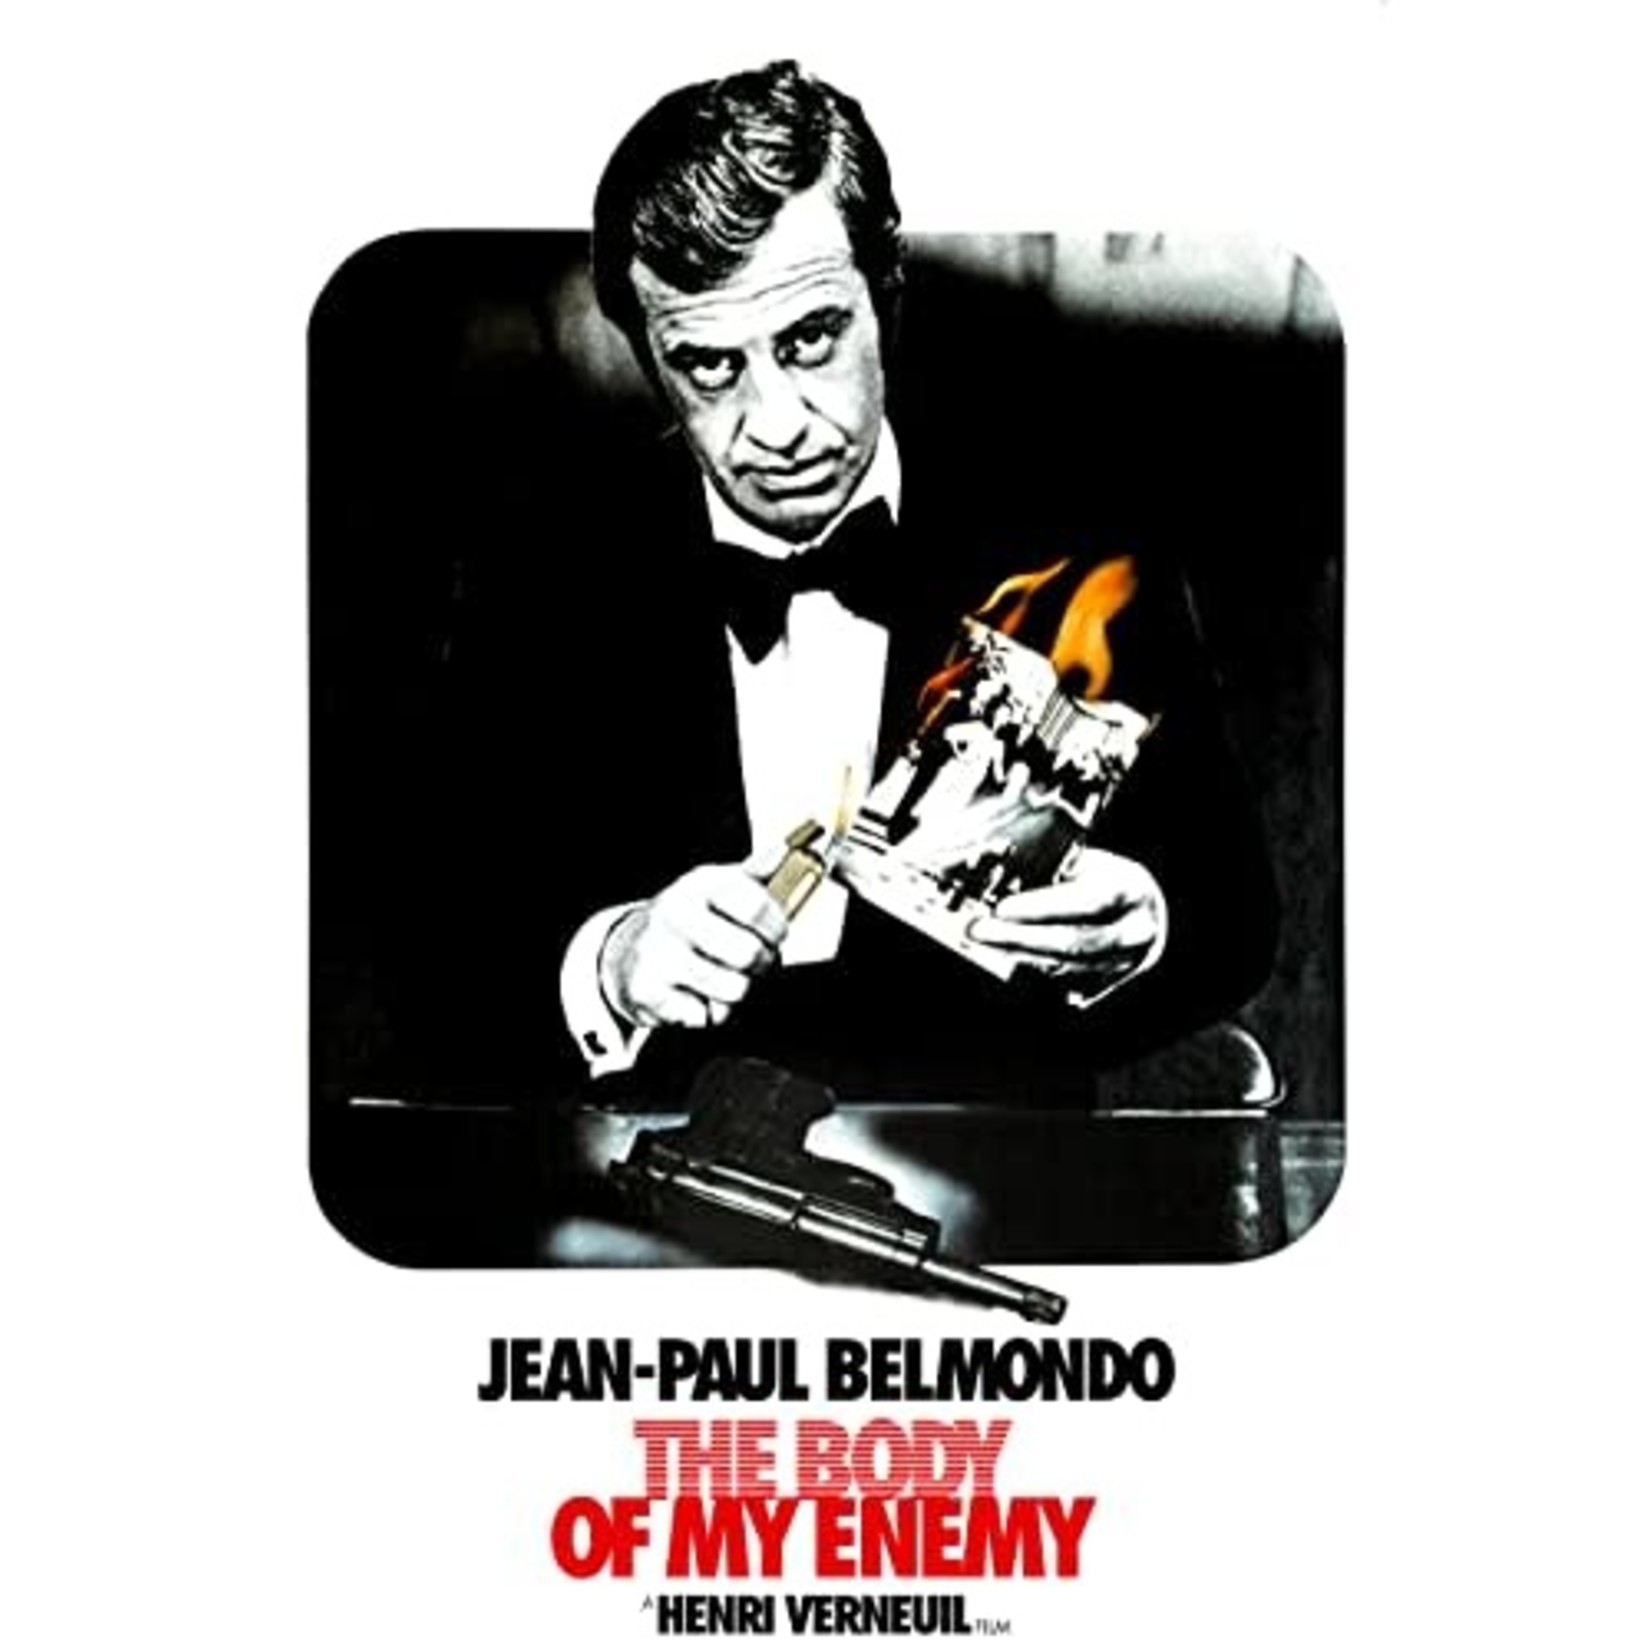 Body Of My Enemy (1976) [DVD]